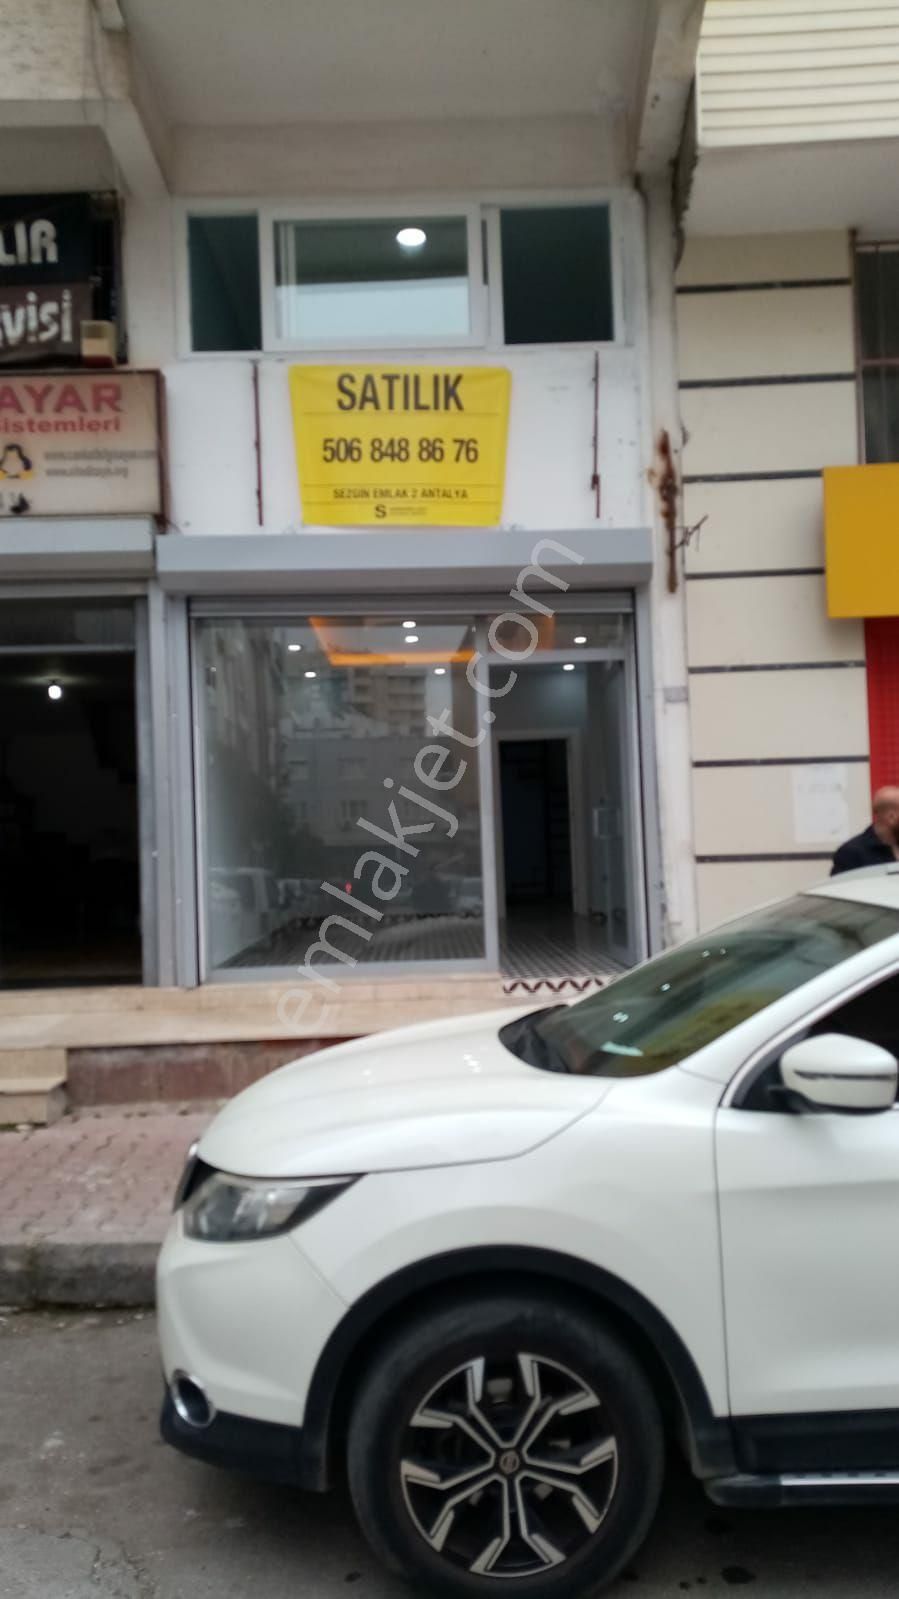 Muratpaşa Kızılsaray Satılık Dükkan & Mağaza ANTALYA MURATPAŞA DA MERKEZİ KONUMDA SATILIK 35+35 M2 İŞYERİ 